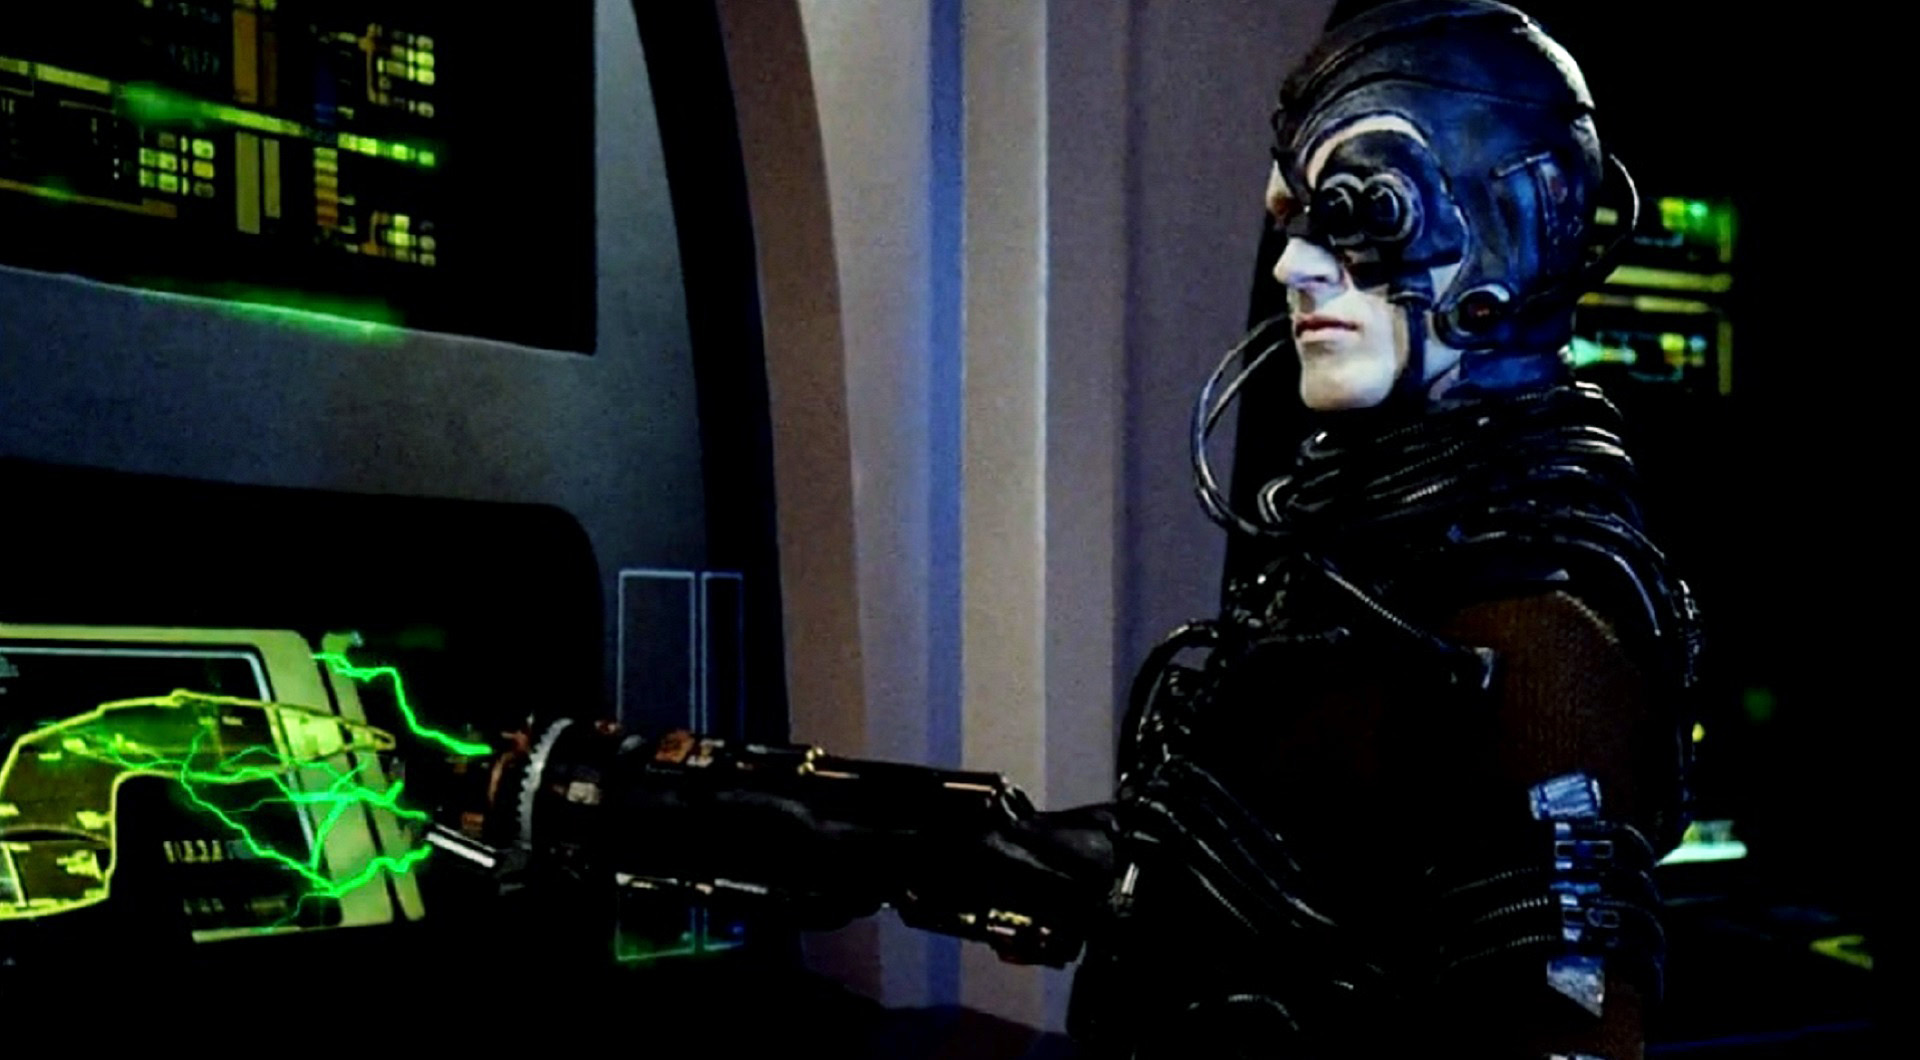 3. The Borg 